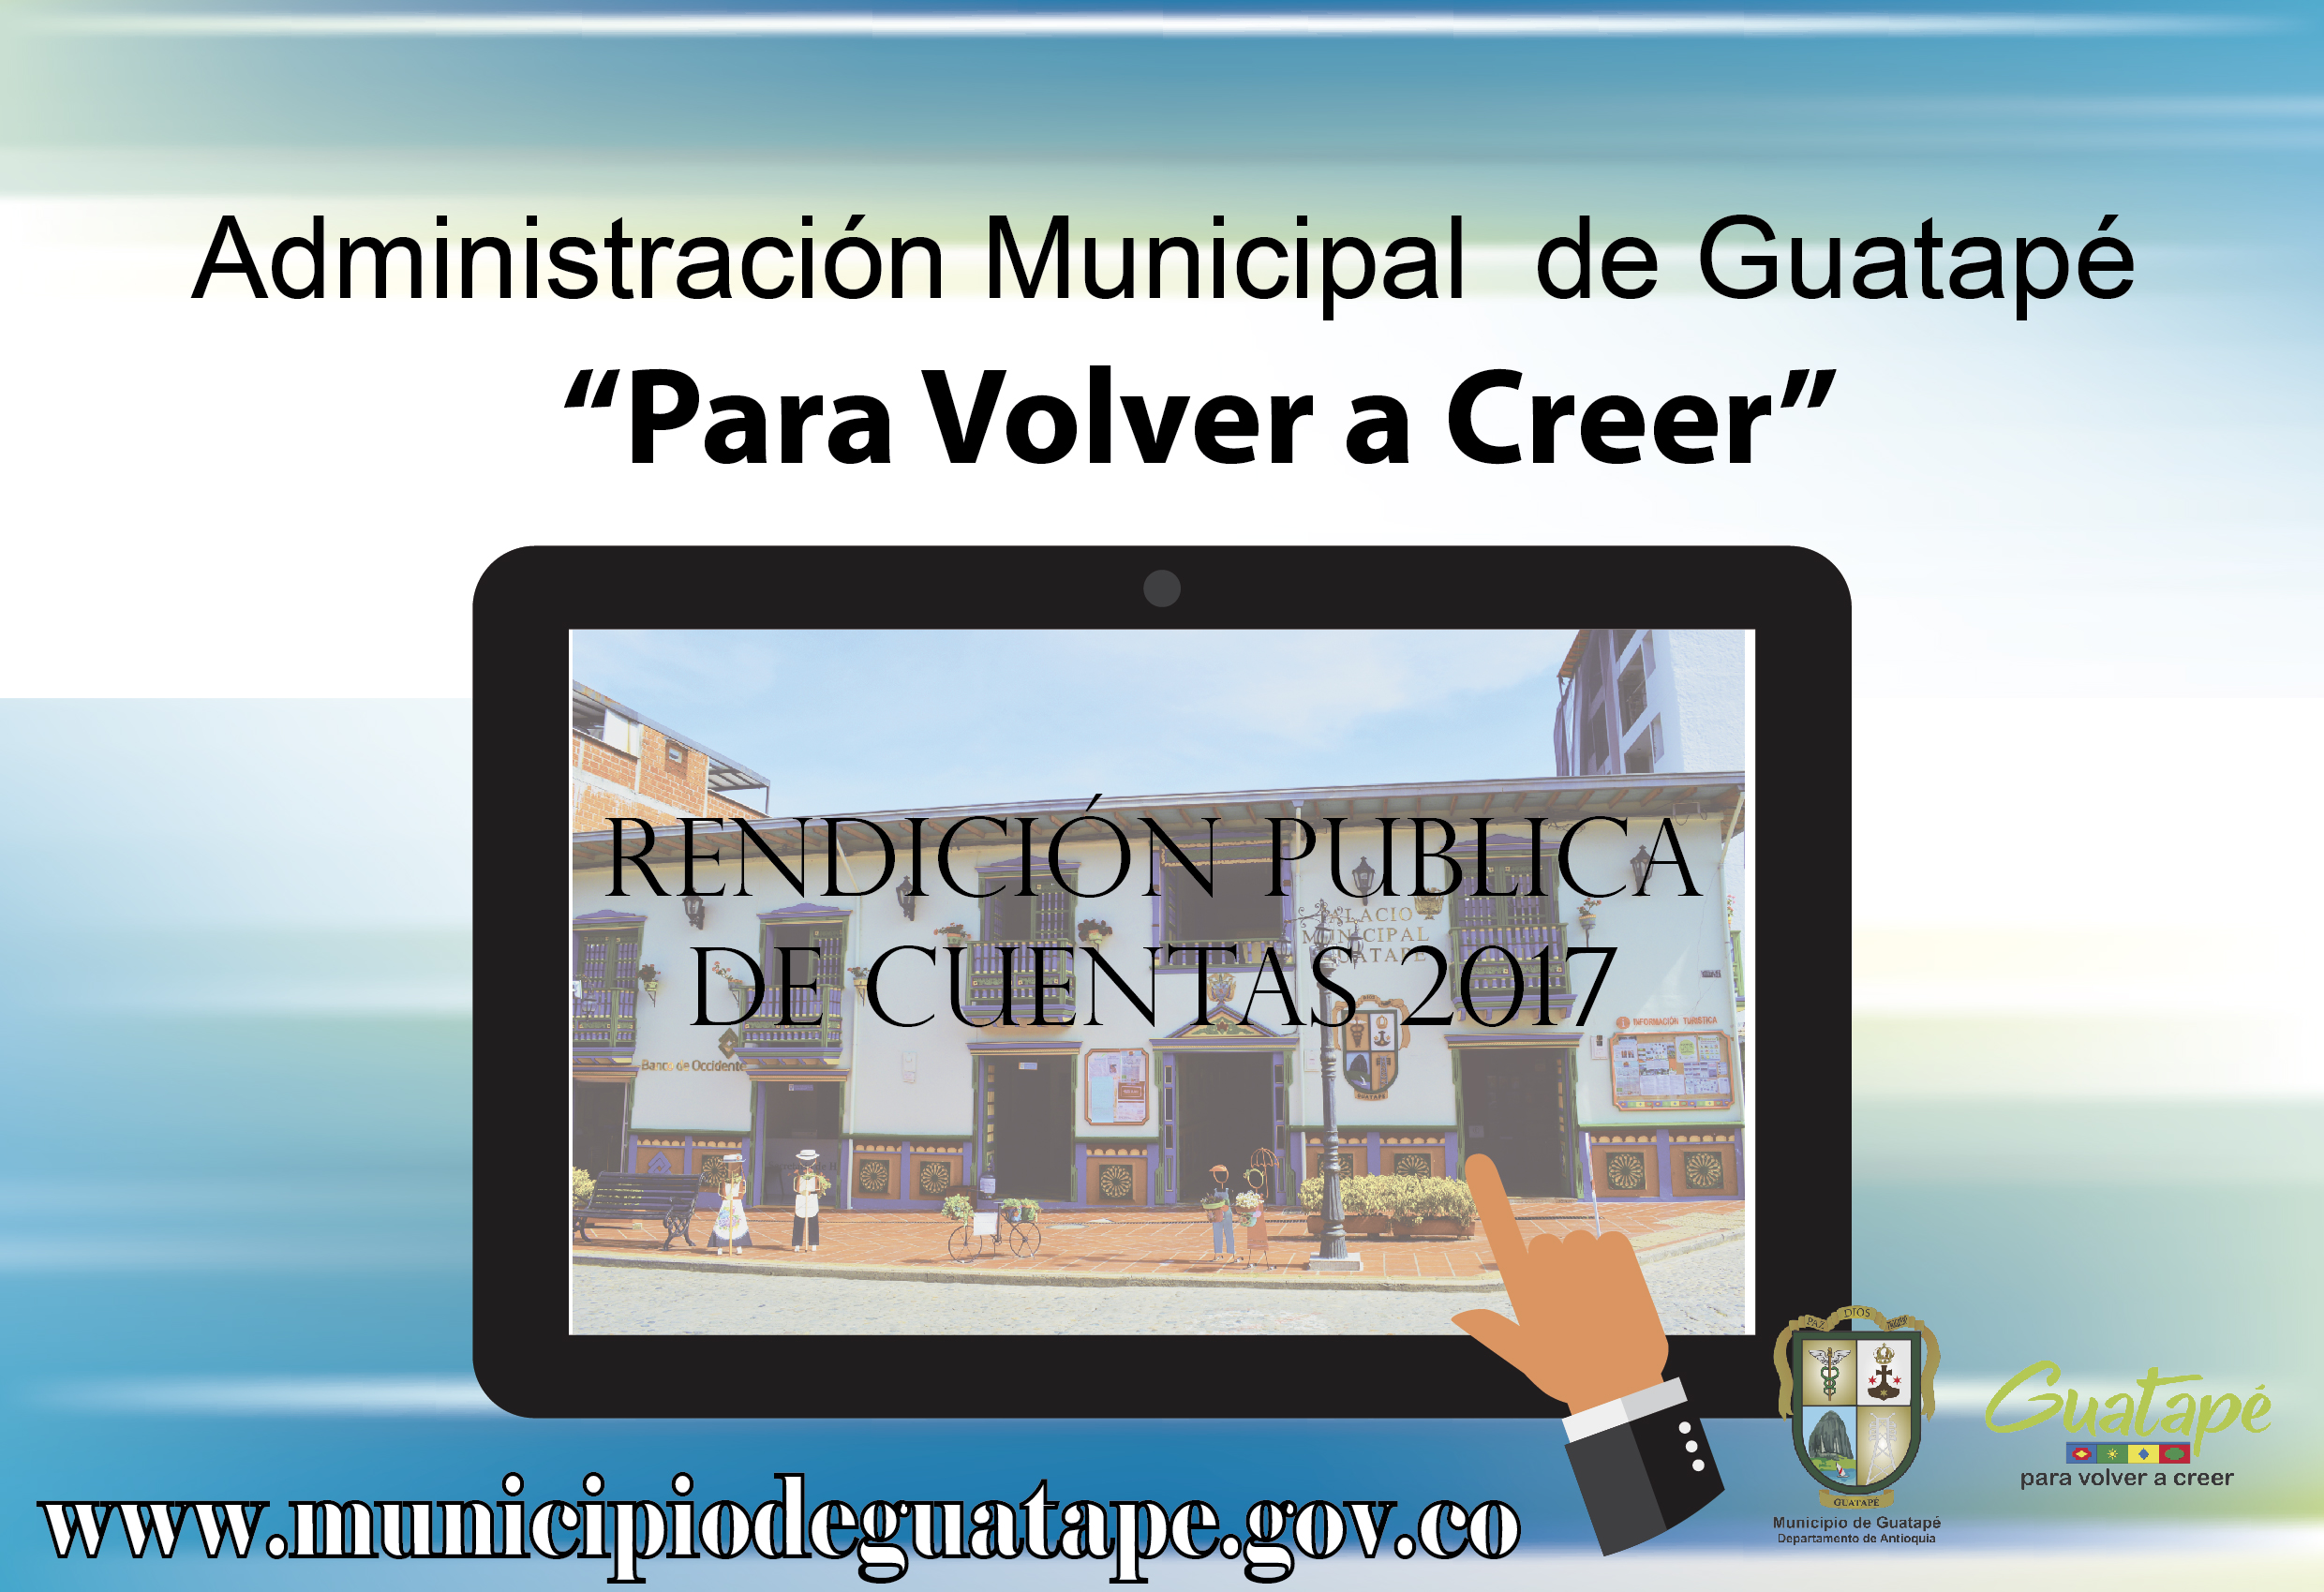 Rendición publica de cuentas, Administración Municipal de Guatapè 2017